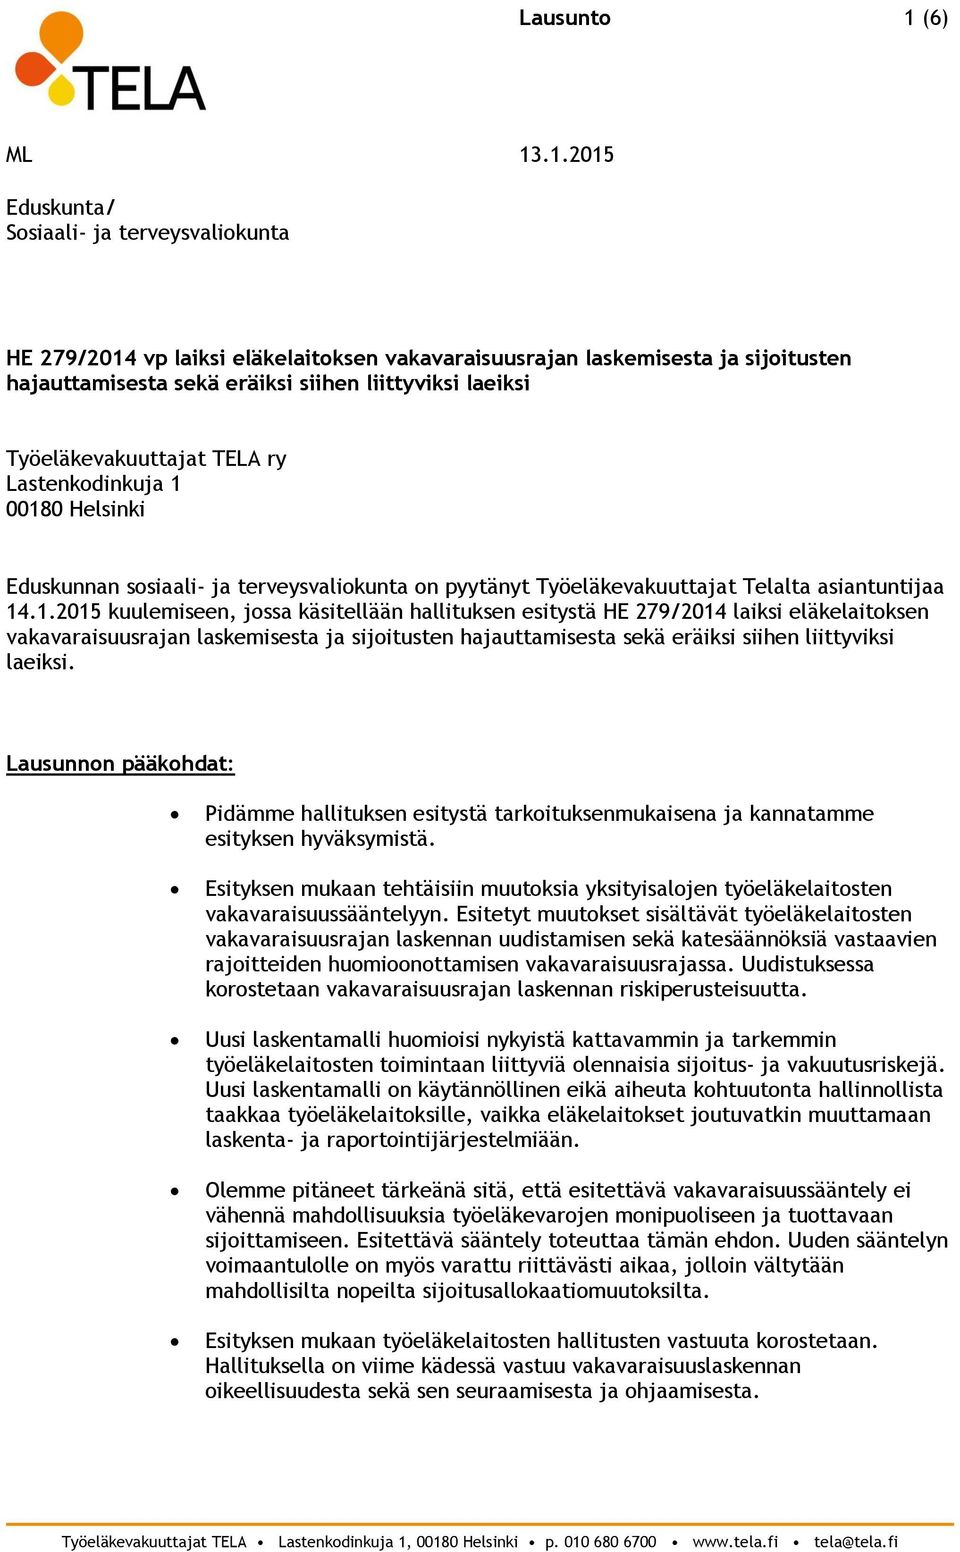 00180 Helsinki Eduskunnan sosiaali- ja terveysvaliokunta on pyytänyt Työeläkevakuuttajat Telalta asiantuntijaa 14.1.2015 kuulemiseen, jossa käsitellään hallituksen esitystä HE 279/2014 laiksi eläkelaitoksen vakavaraisuusrajan laskemisesta ja sijoitusten hajauttamisesta sekä eräiksi siihen liittyviksi laeiksi.